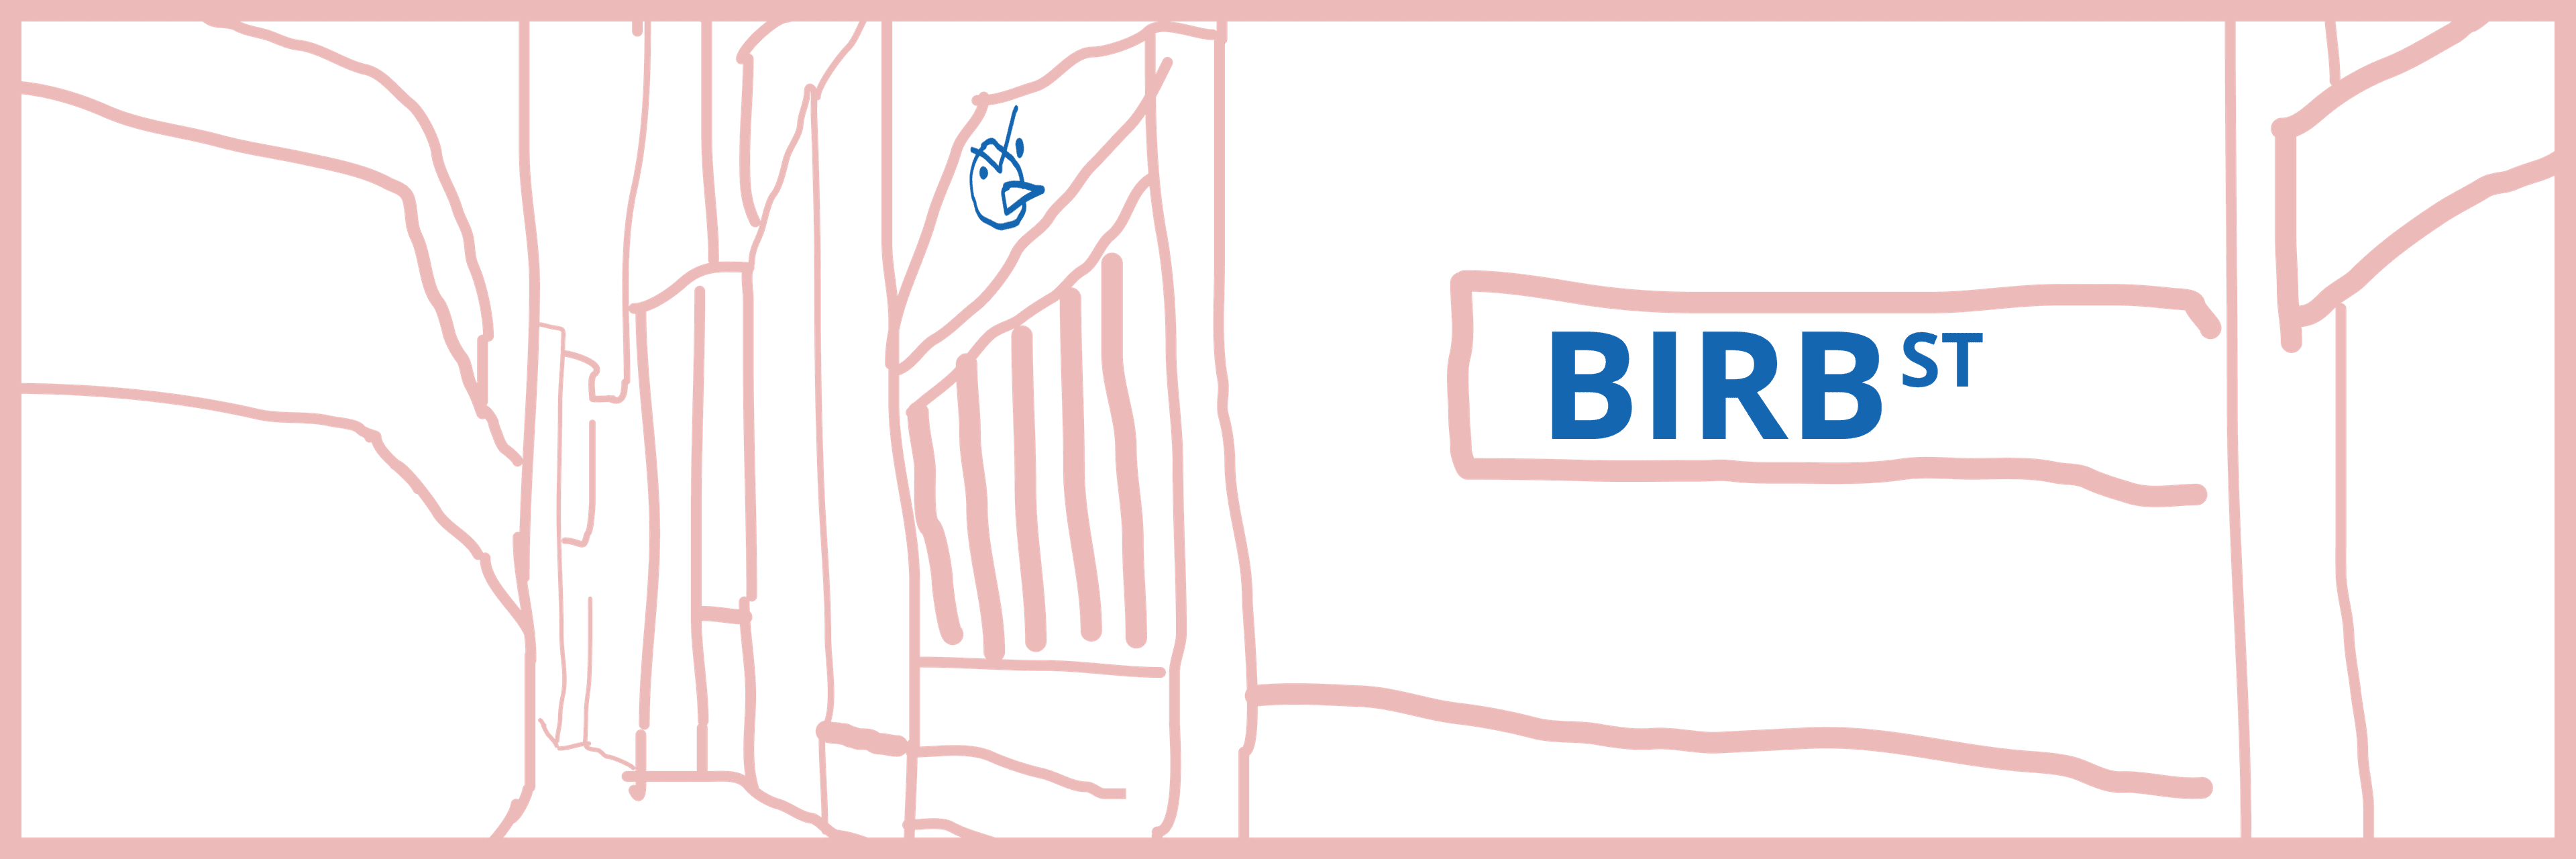 birb street banner